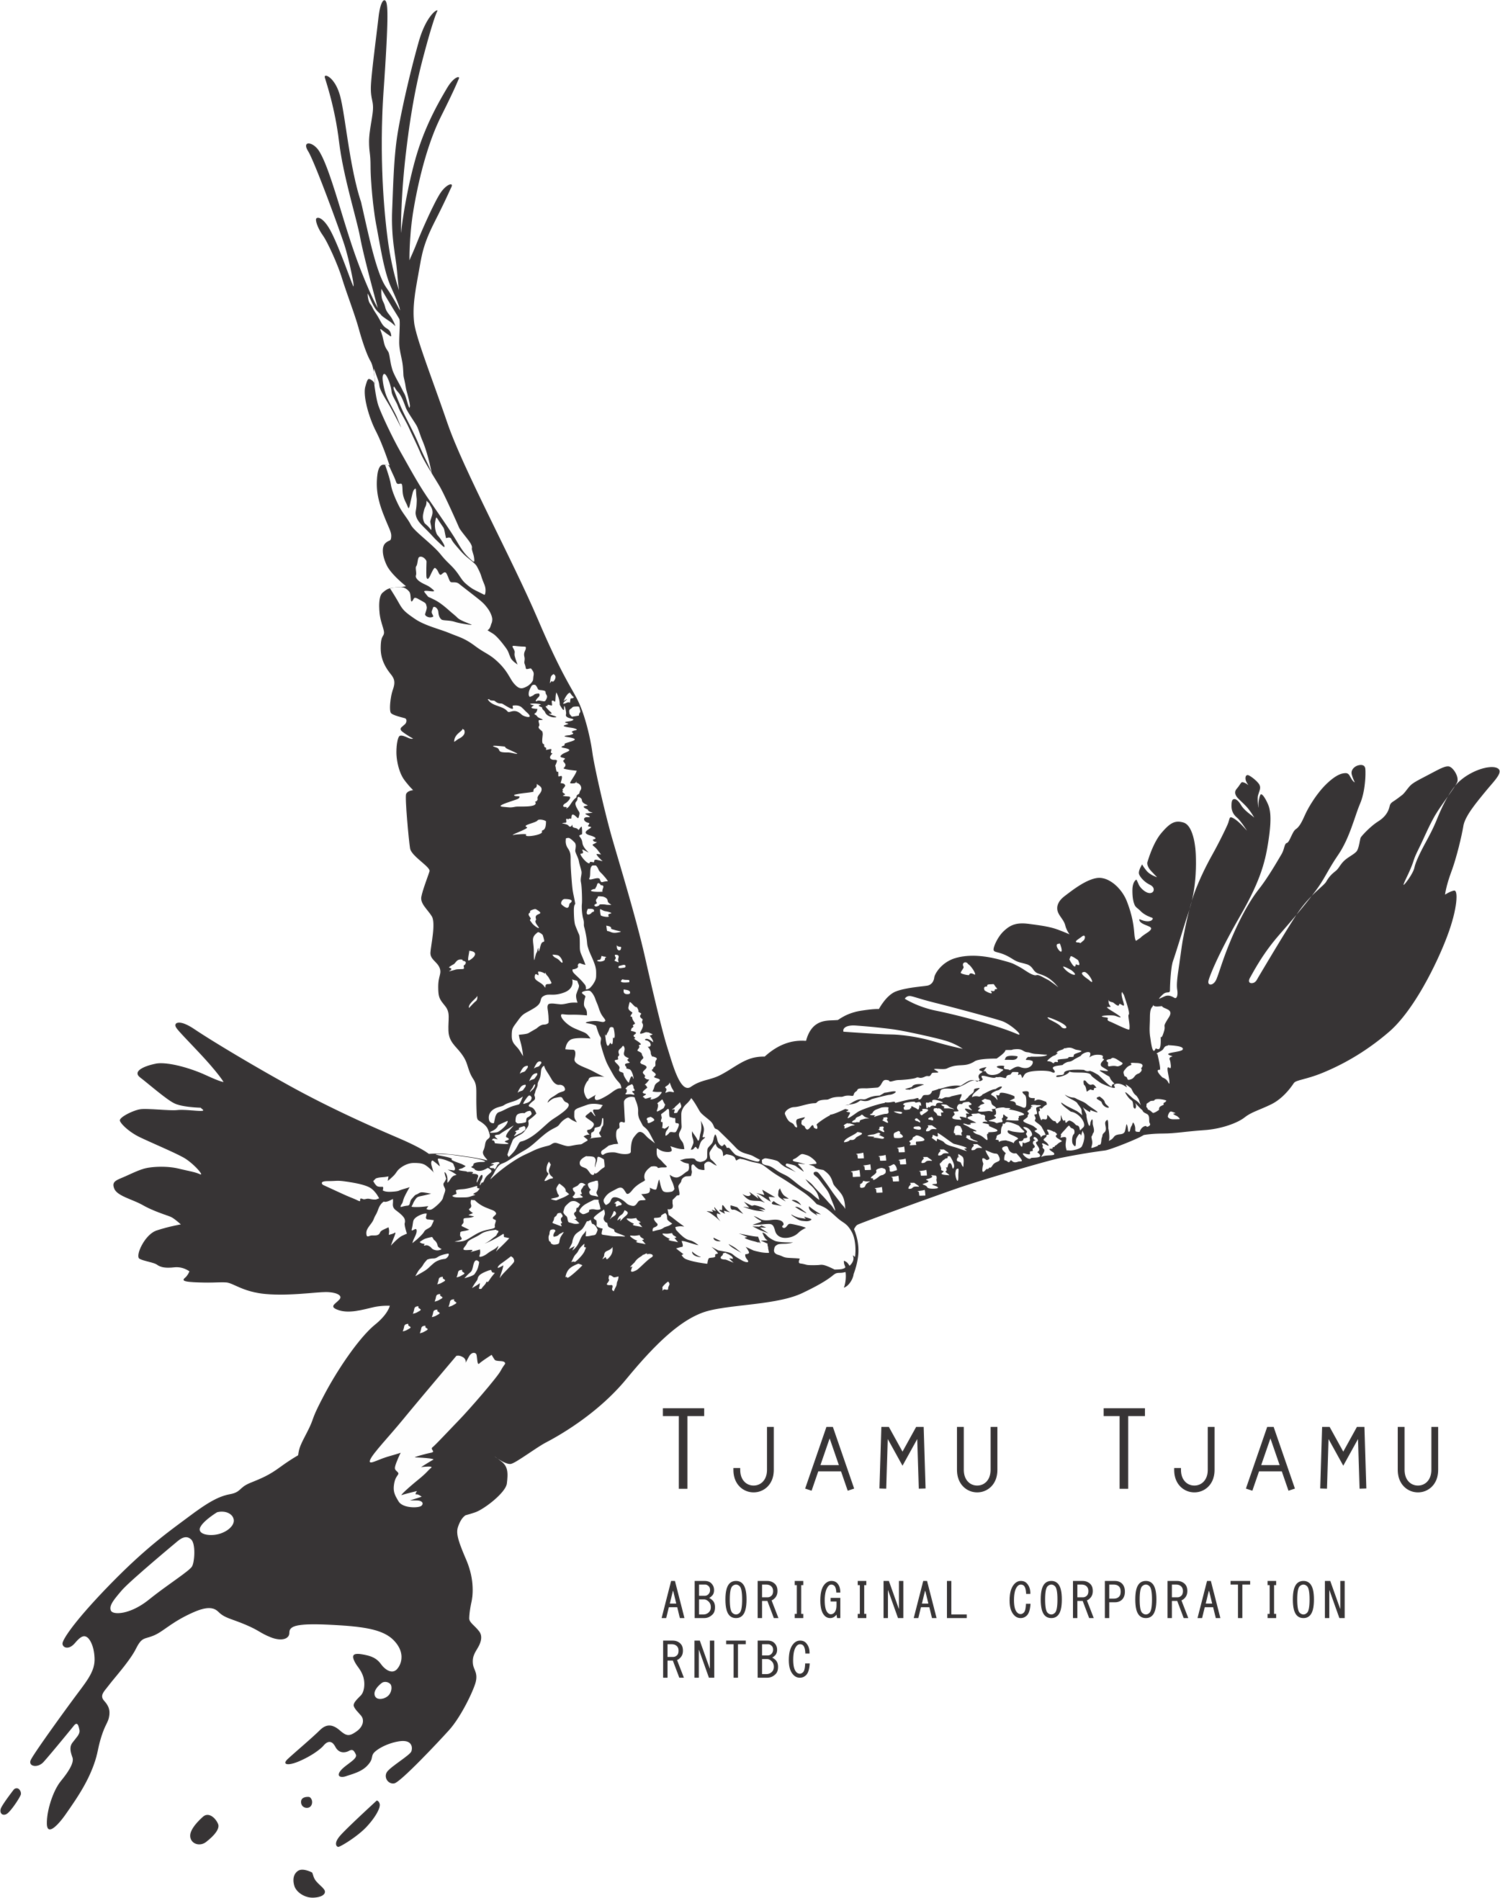 Tjamu Tjamu (Aboriginal Corporation) RNTBC